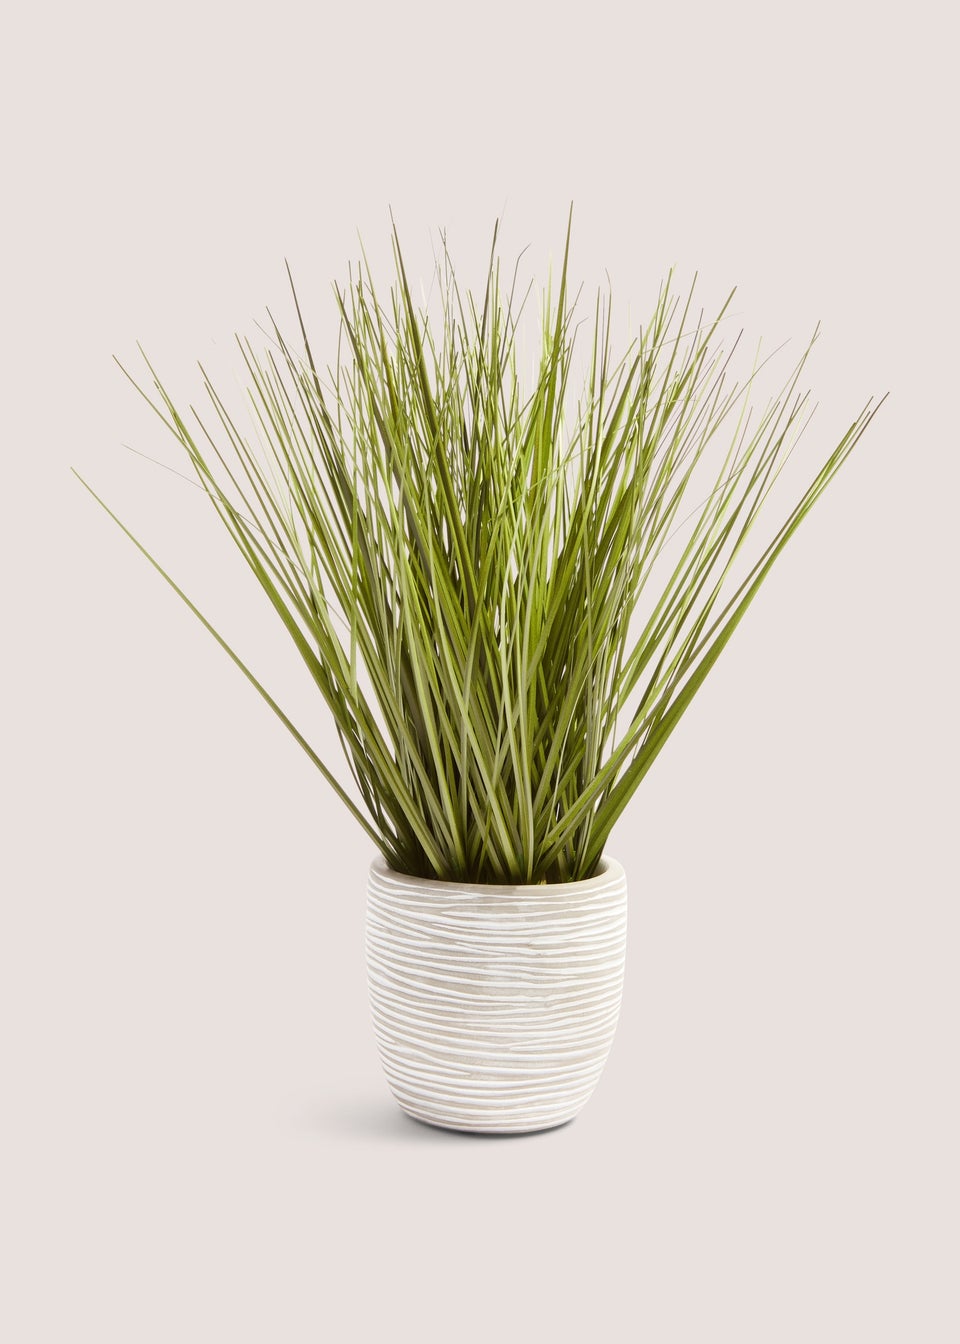 White Cement Pot With Grass (32cm x 16cm x 16cm)